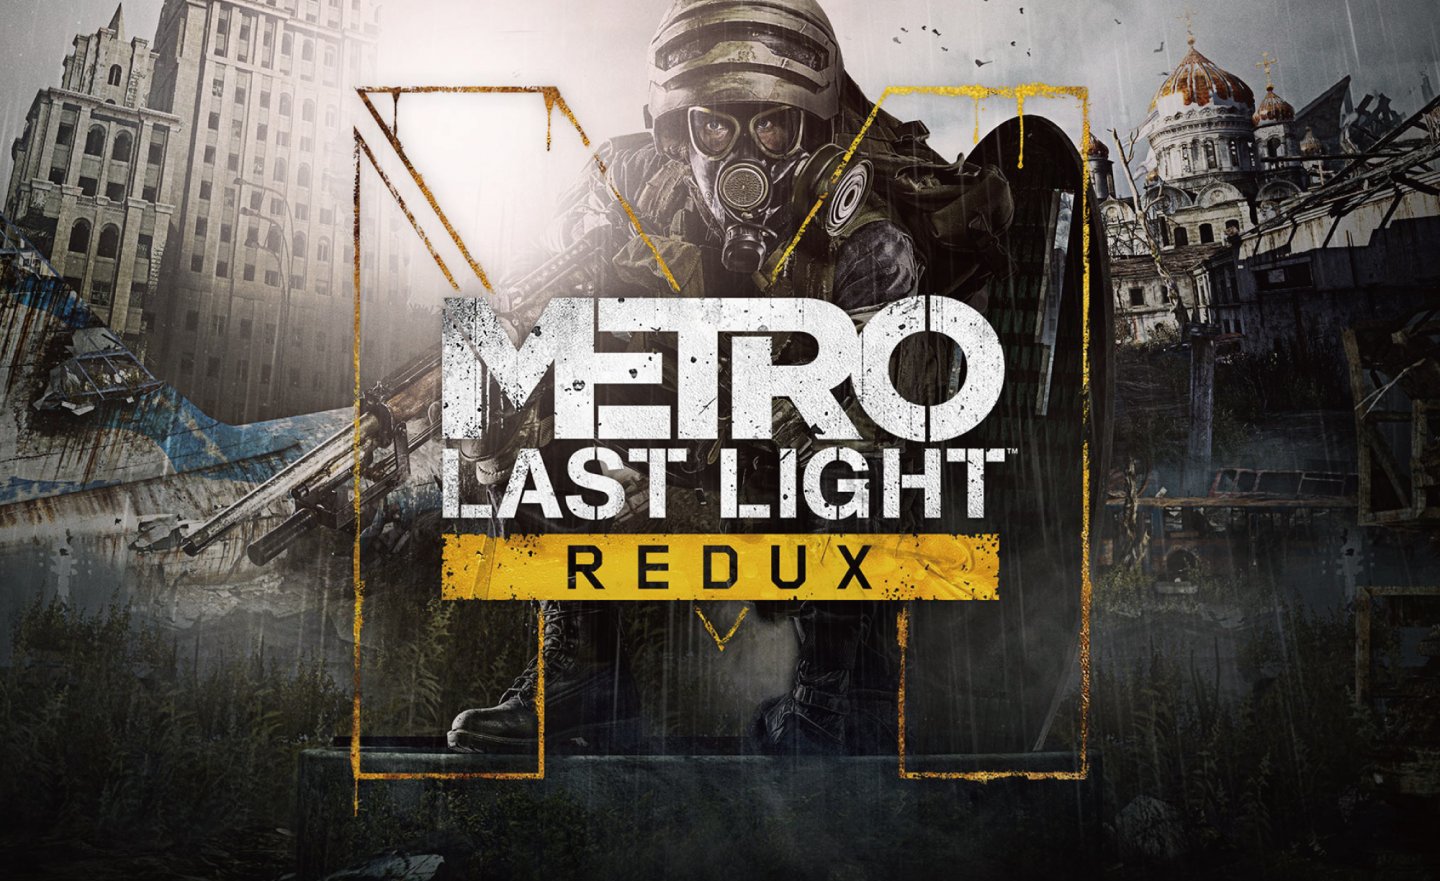 【限時免費】24 小時放送射擊遊戲《Metro: Last Light Redux 戰慄深隧：最後曙光》，2022 年 12 月 26 日 00:00 截止